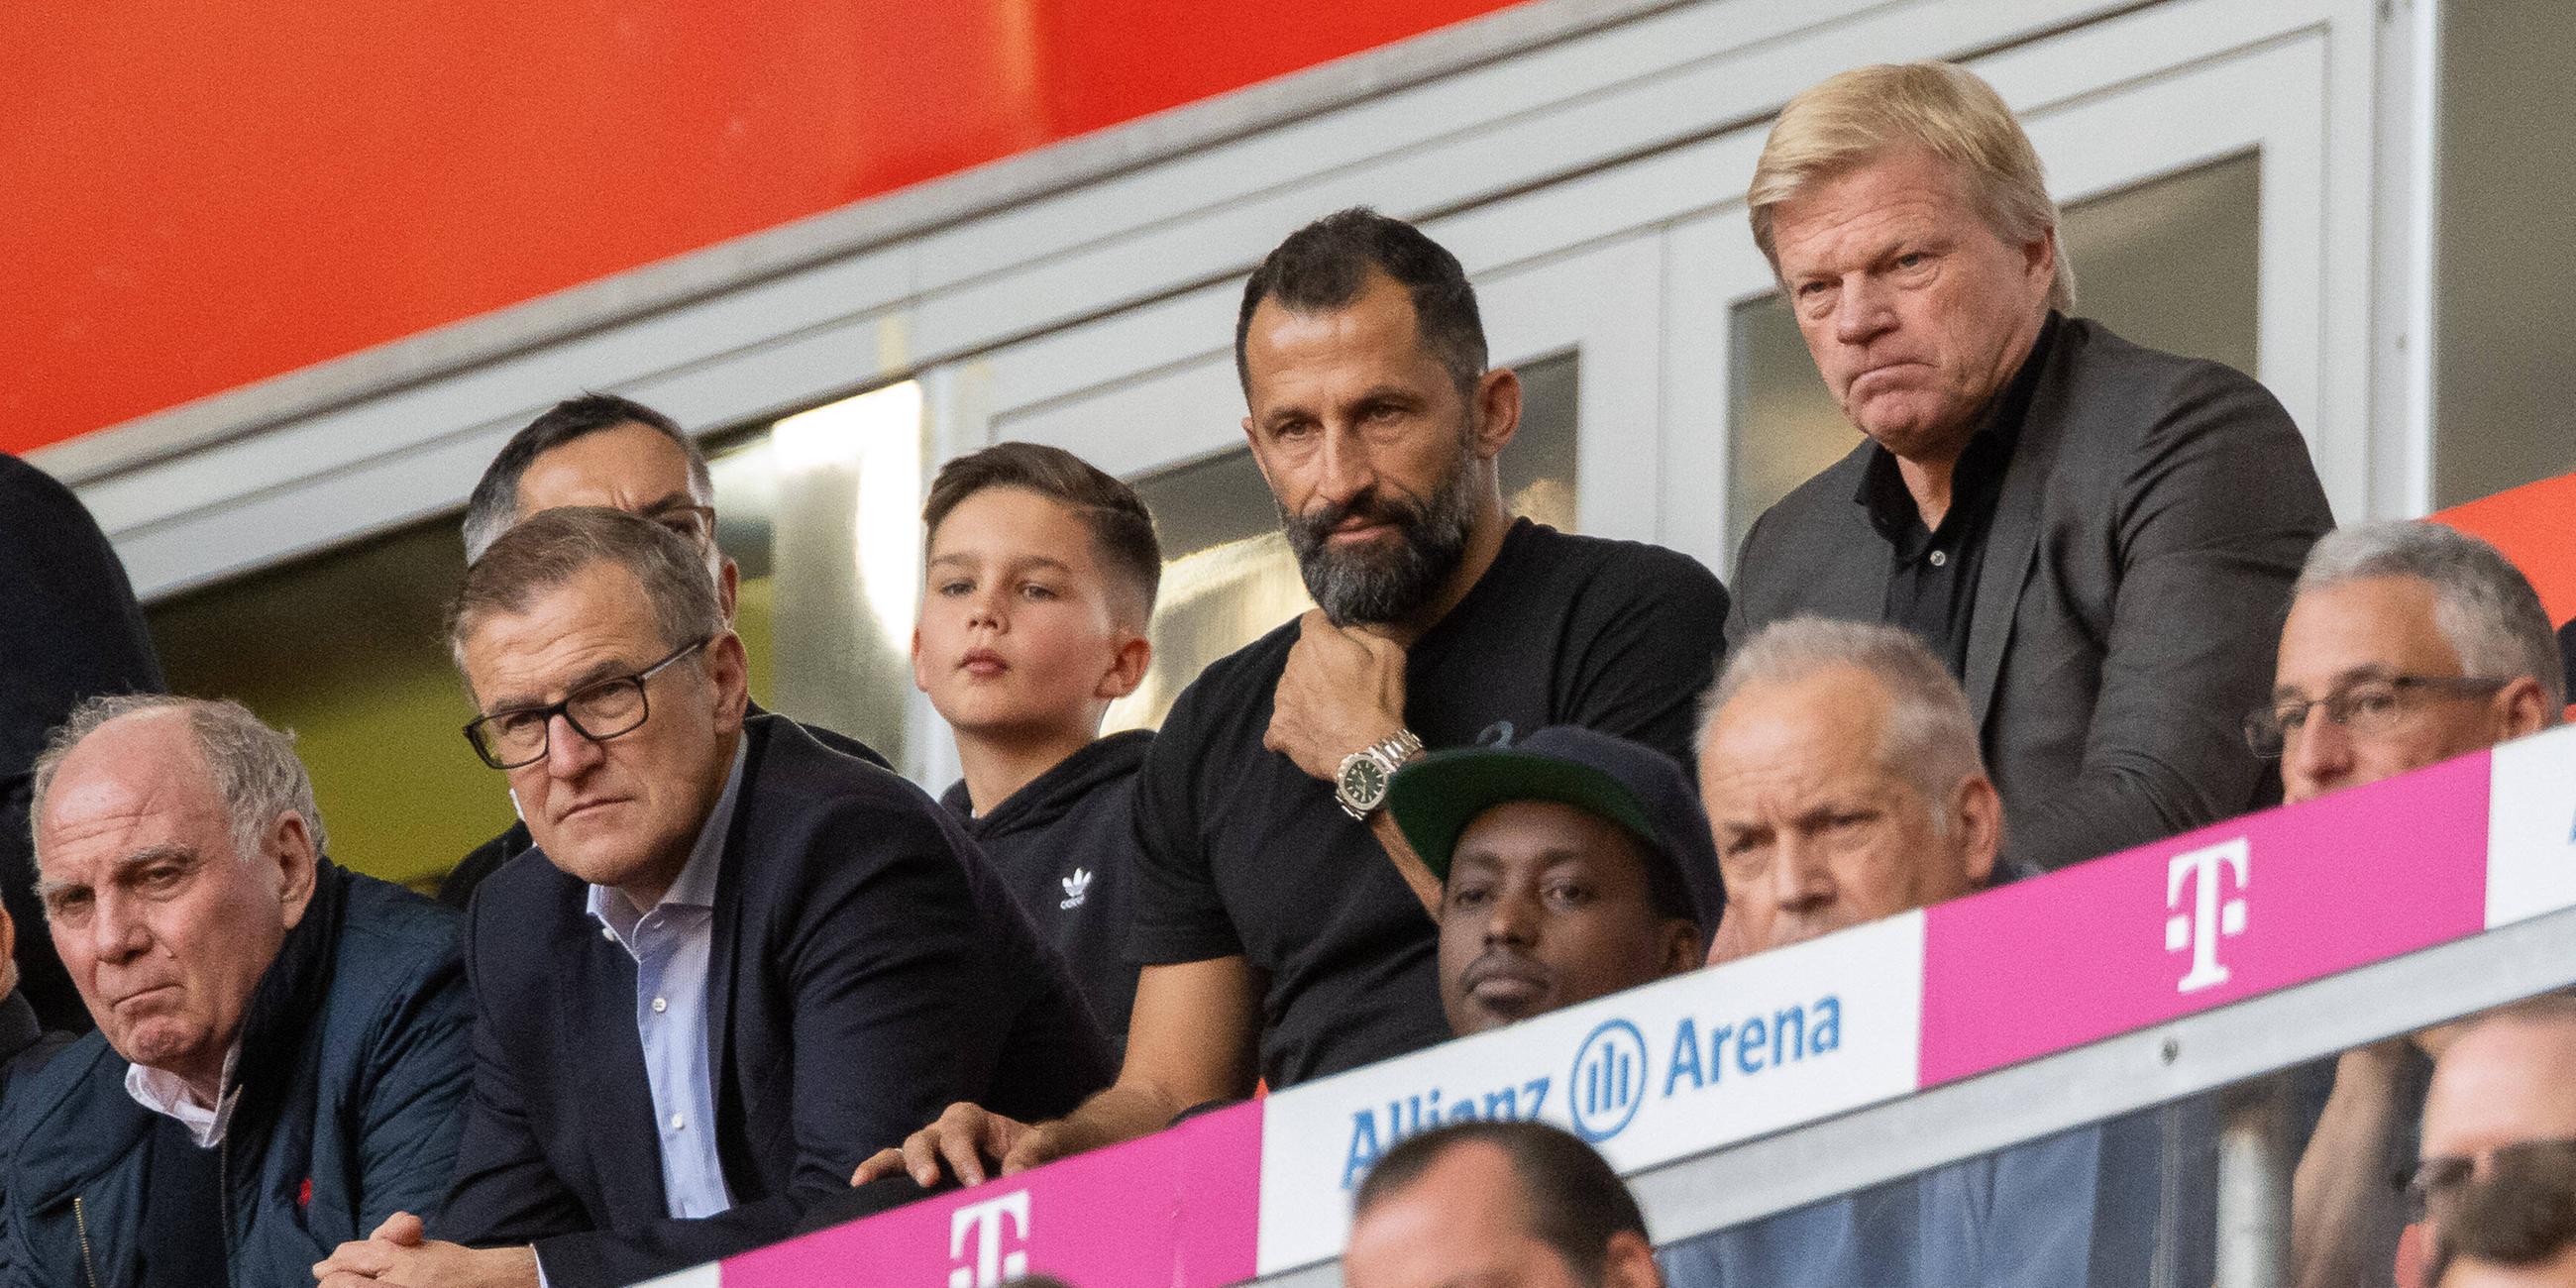 Vorstandsmitglieder des FC Bayern München auf der Tribüne